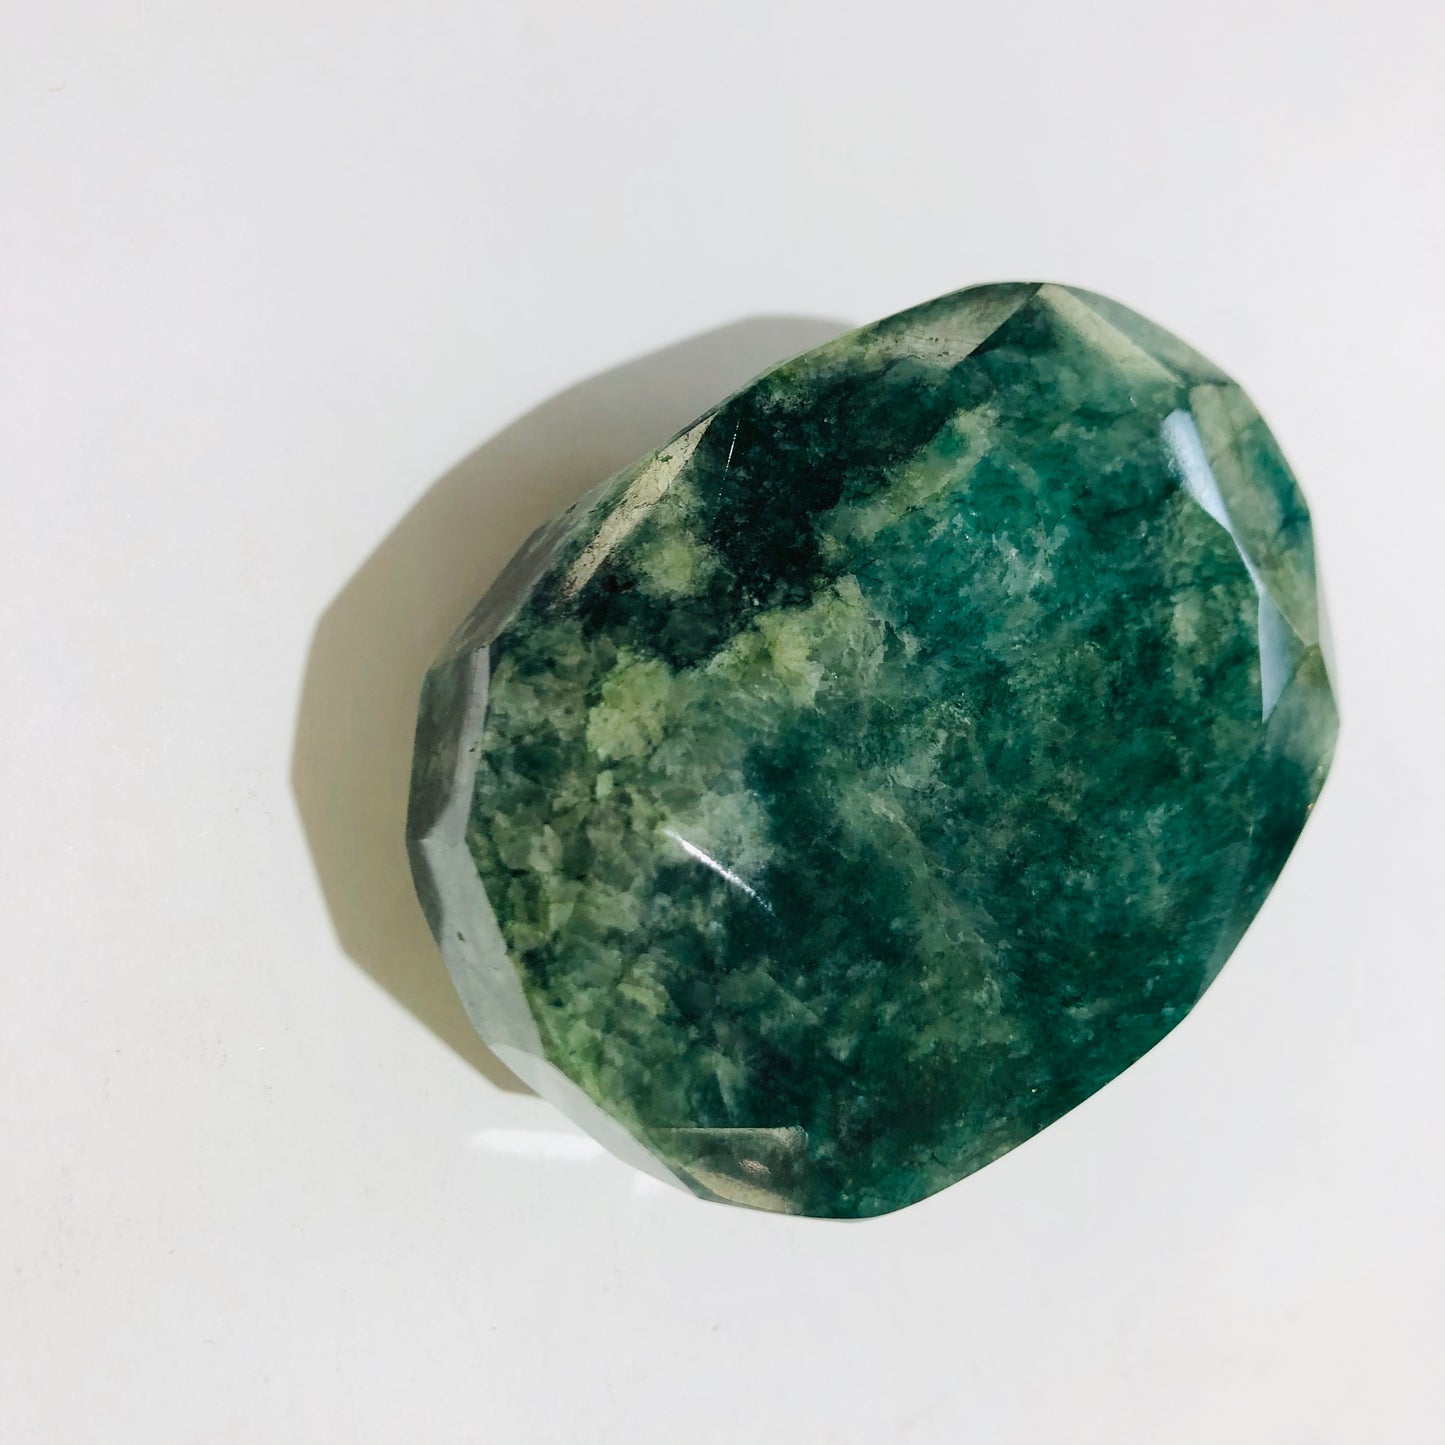 Emerald specimen